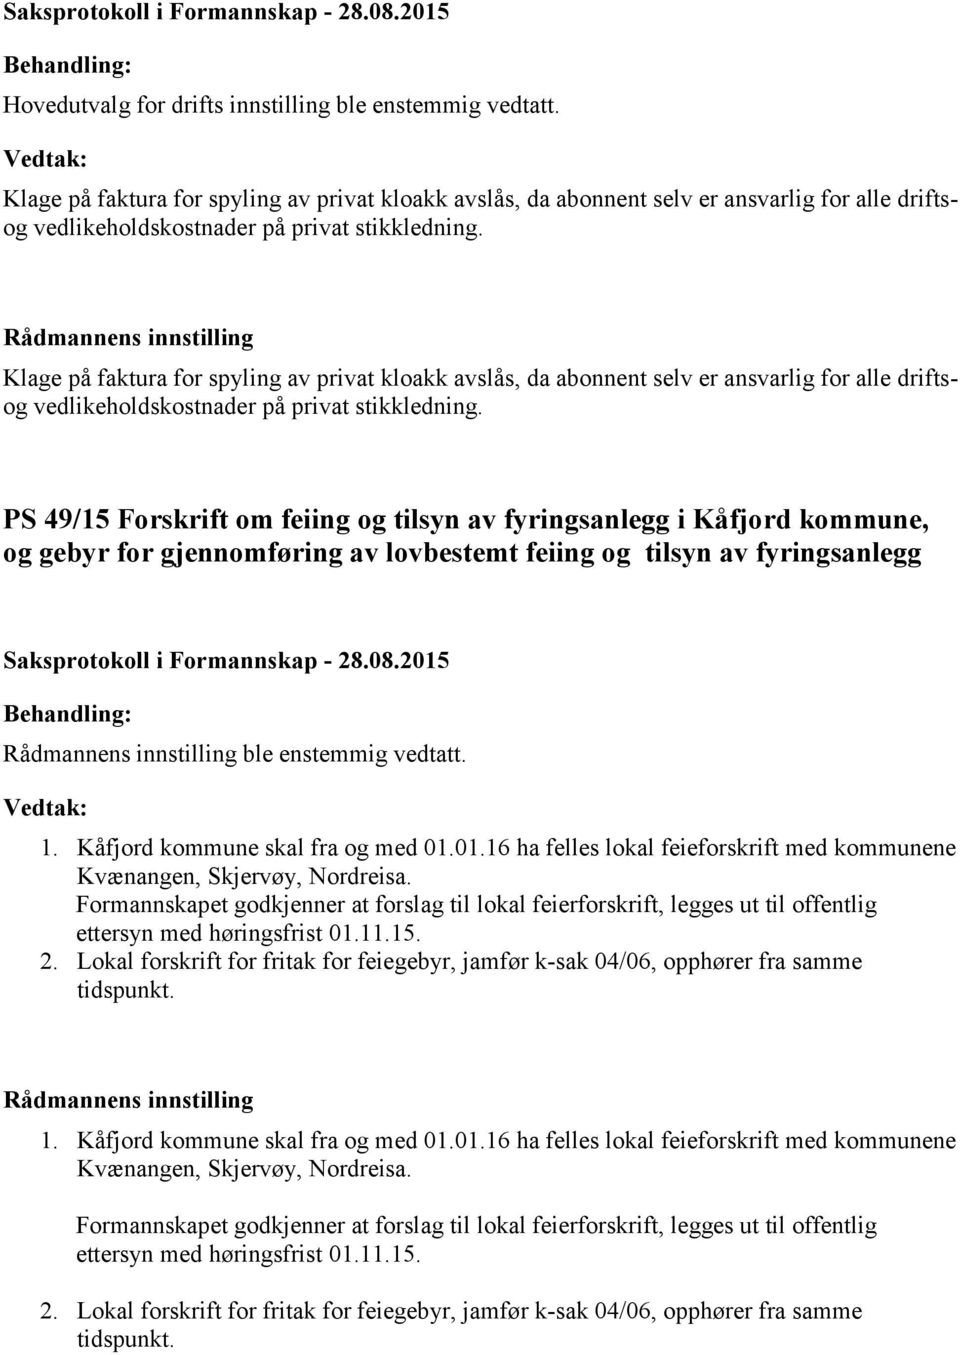 PS 49/15 Forskrift om feiing og tilsyn av fyringsanlegg i Kåfjord kommune, og gebyr for gjennomføring av lovbestemt feiing og tilsyn av fyringsanlegg ble enstemmig vedtatt. 1.